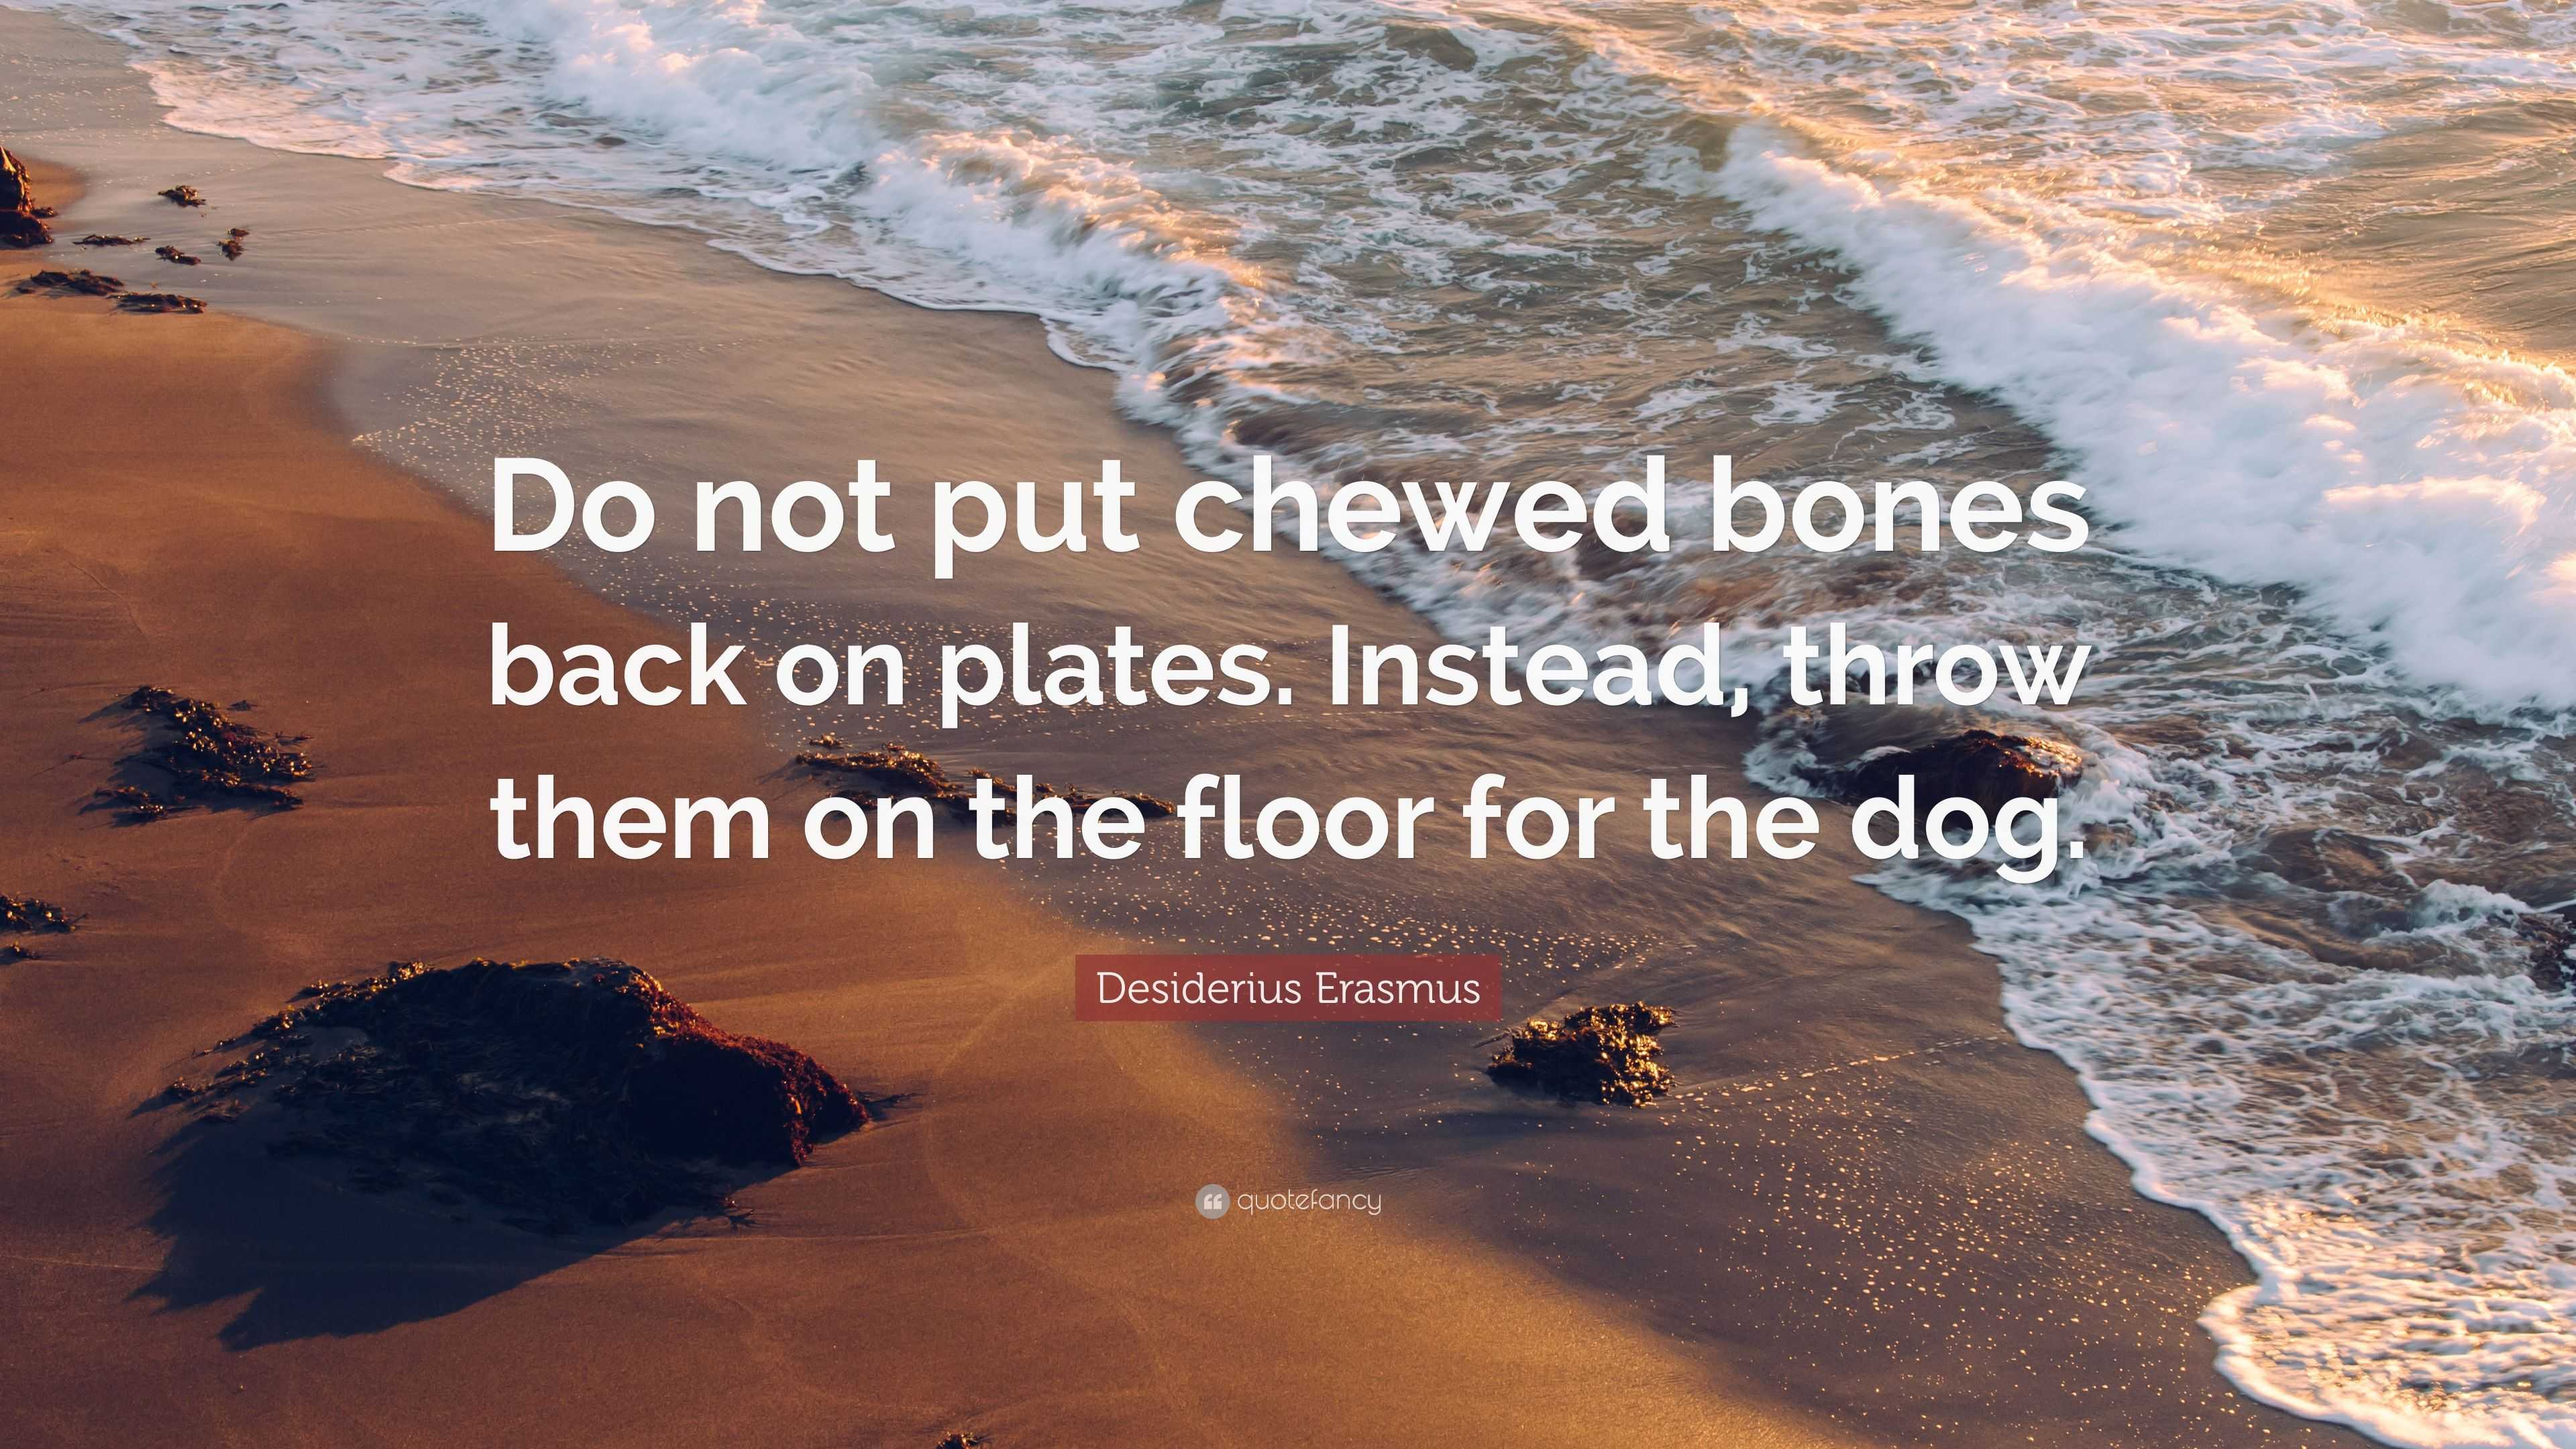 chewed bones